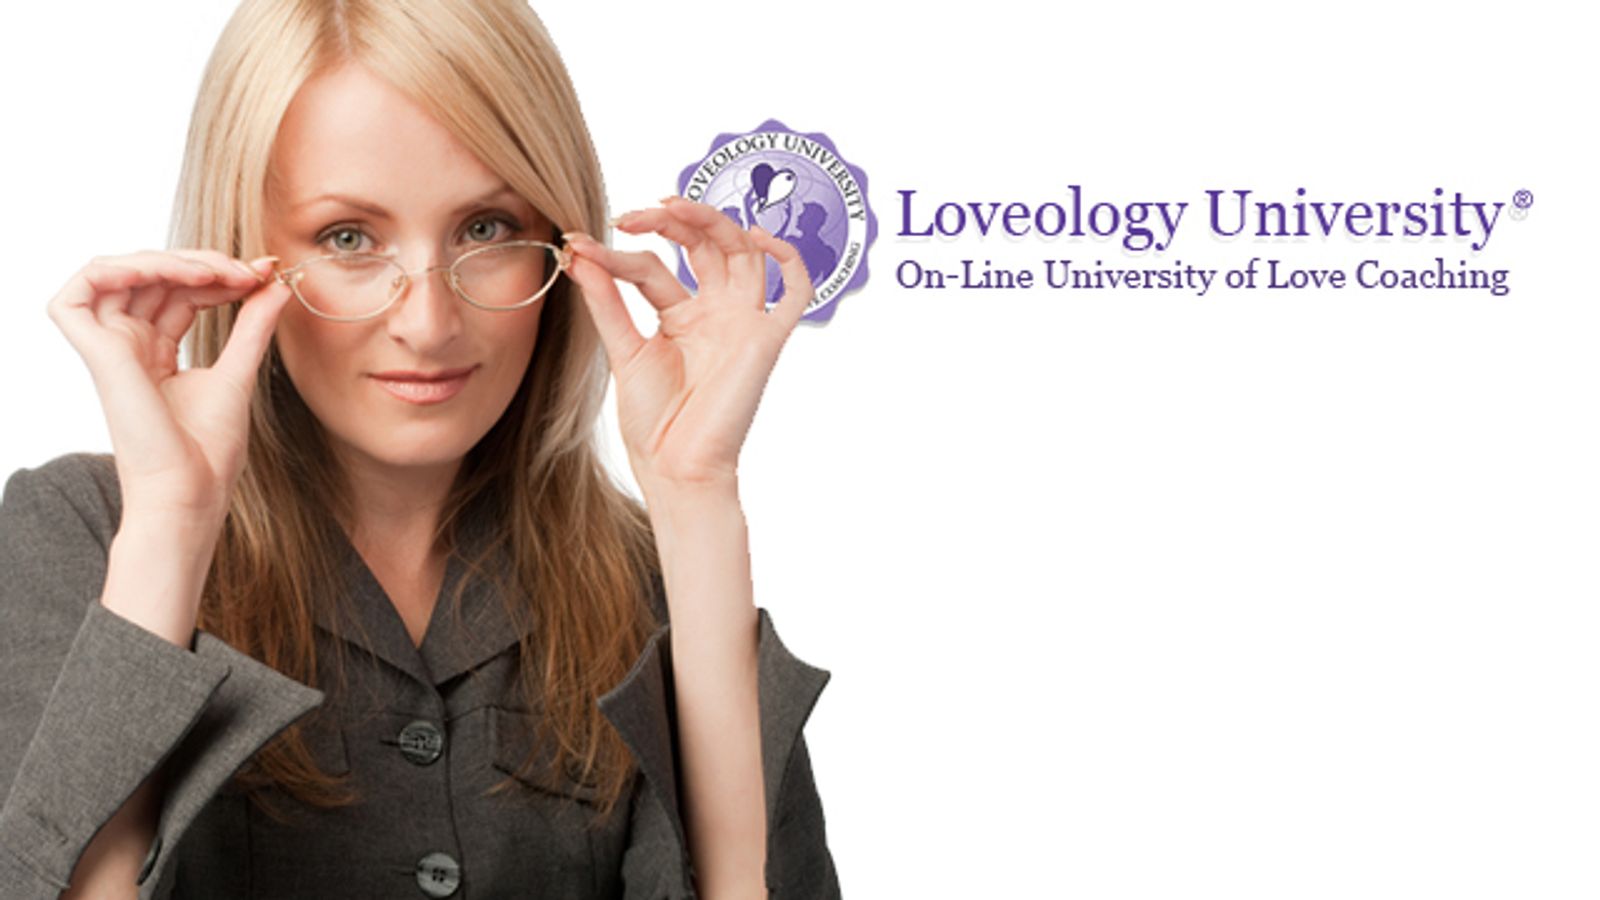 Loveology University Searching for World's Best Lover